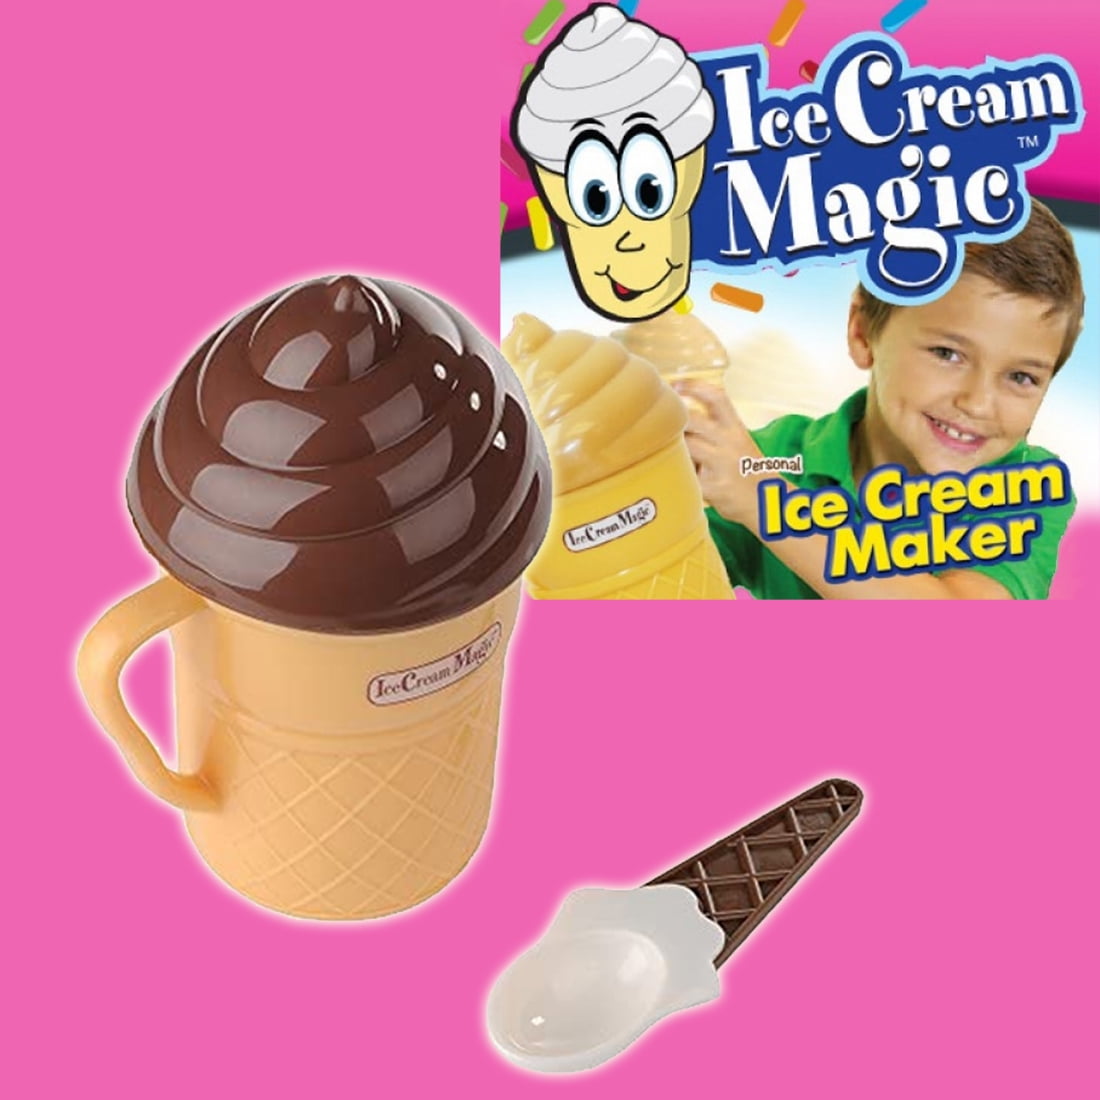 As Seen on TV Ice Cream Magic- Kids Small Kitchen Appliances